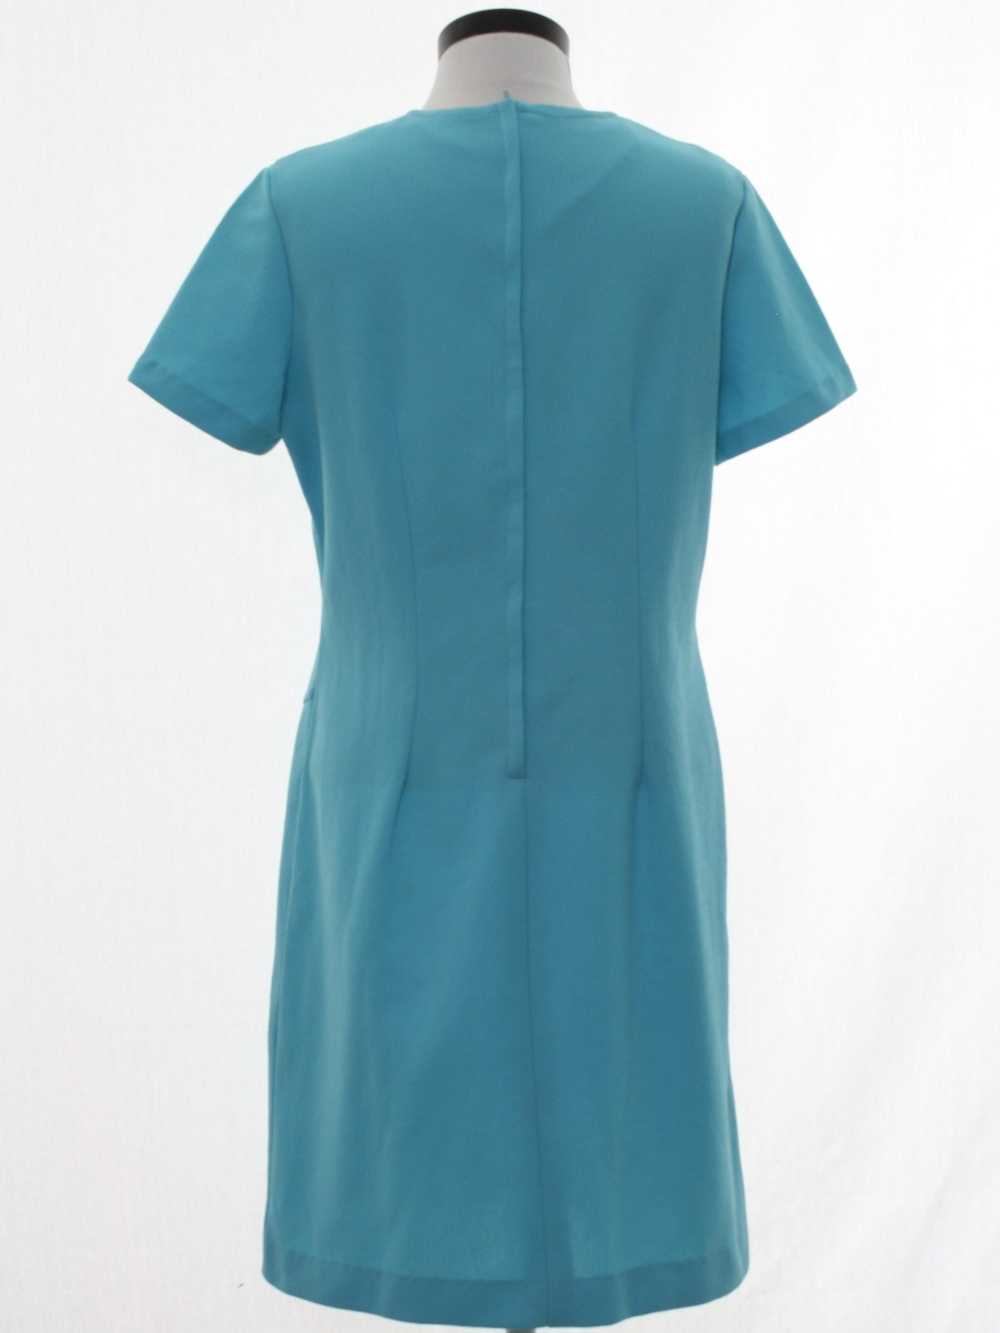 1970's Mod Knit Dress - image 3